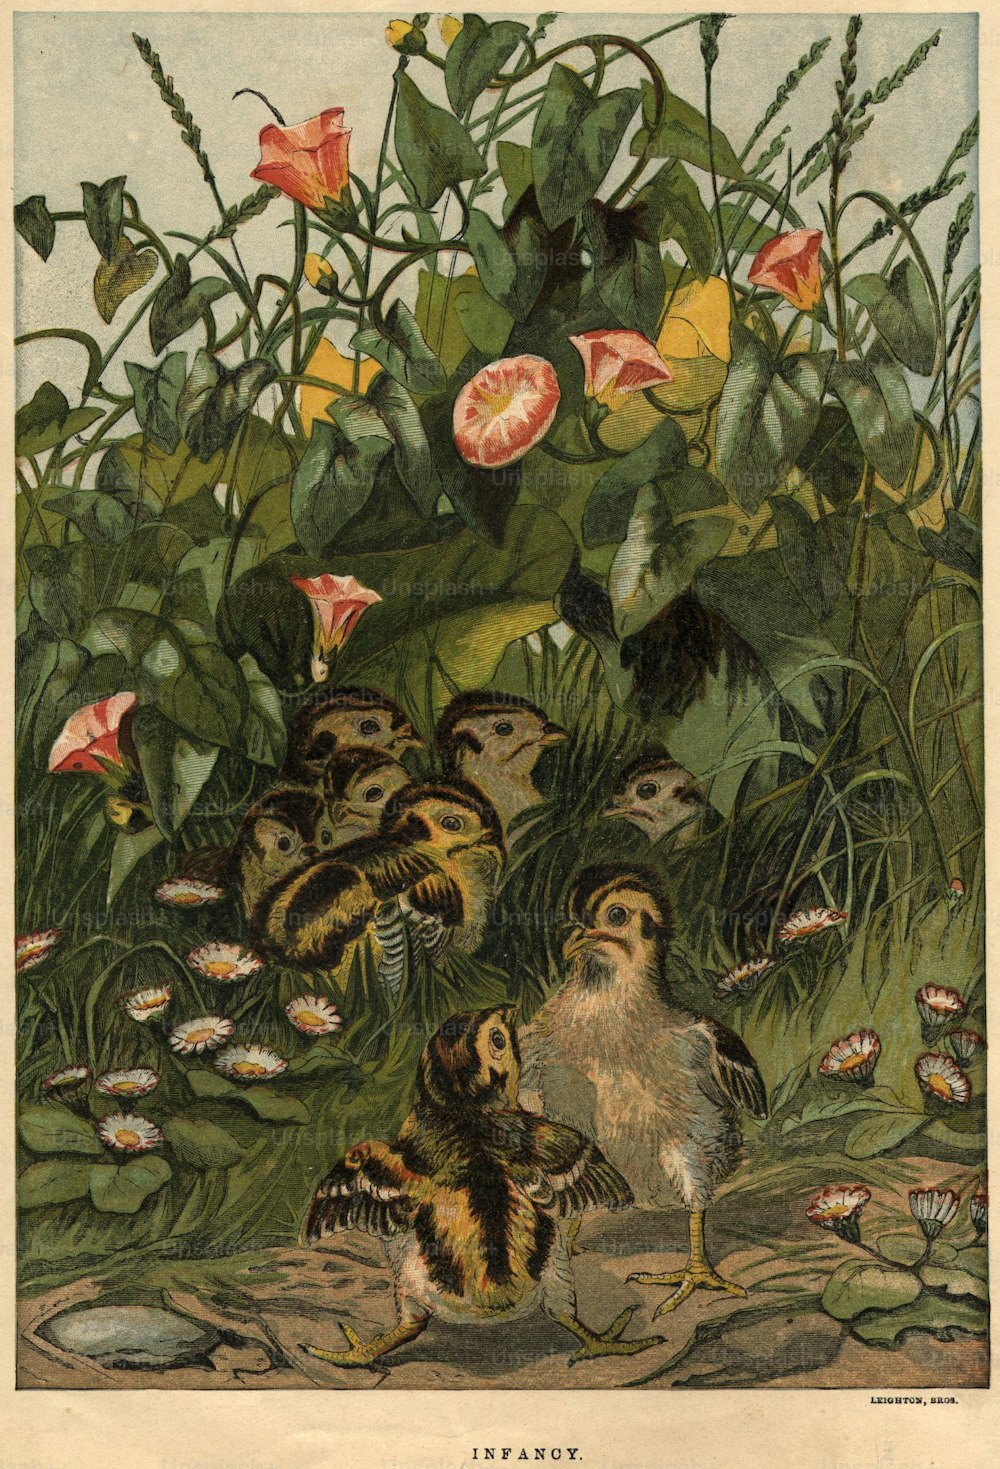 Hacia 1880: Una camada de polluelos juega entre los convolvus.  Leighton Brothers (Foto de Hulton Archive/Getty Images)